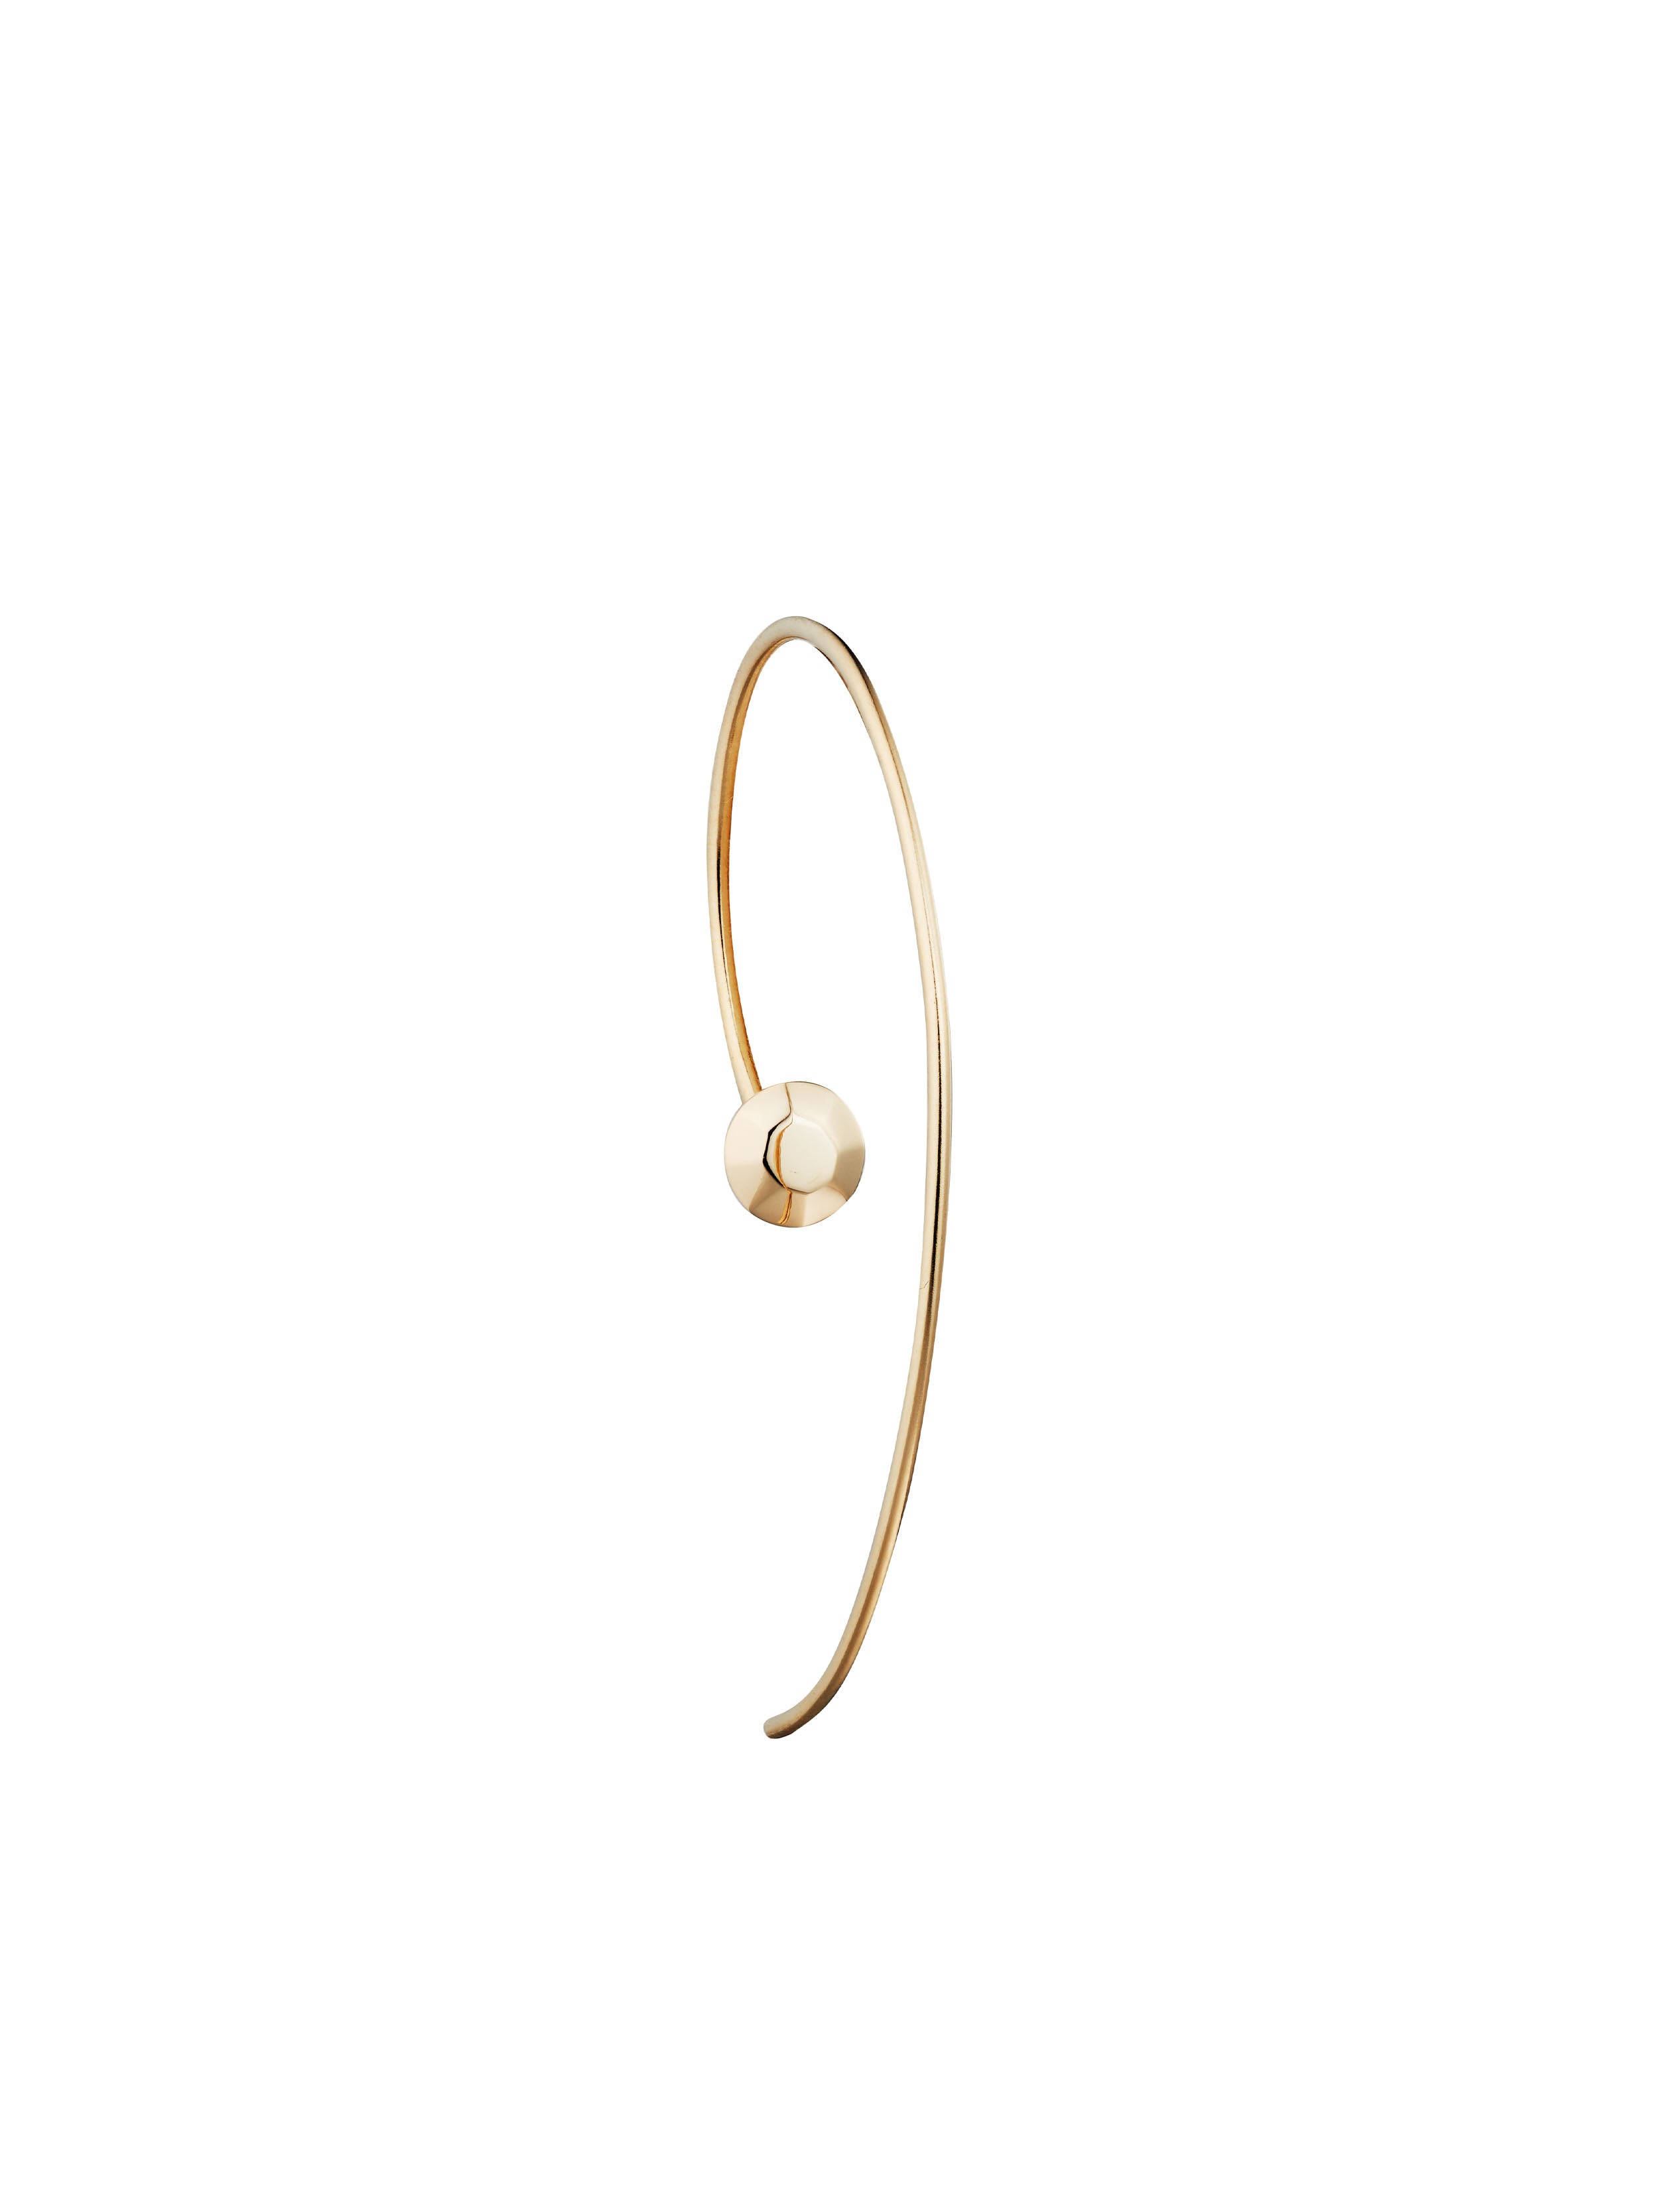 KINRADEN APS KINSMEN Earring - 18k gold Earrings